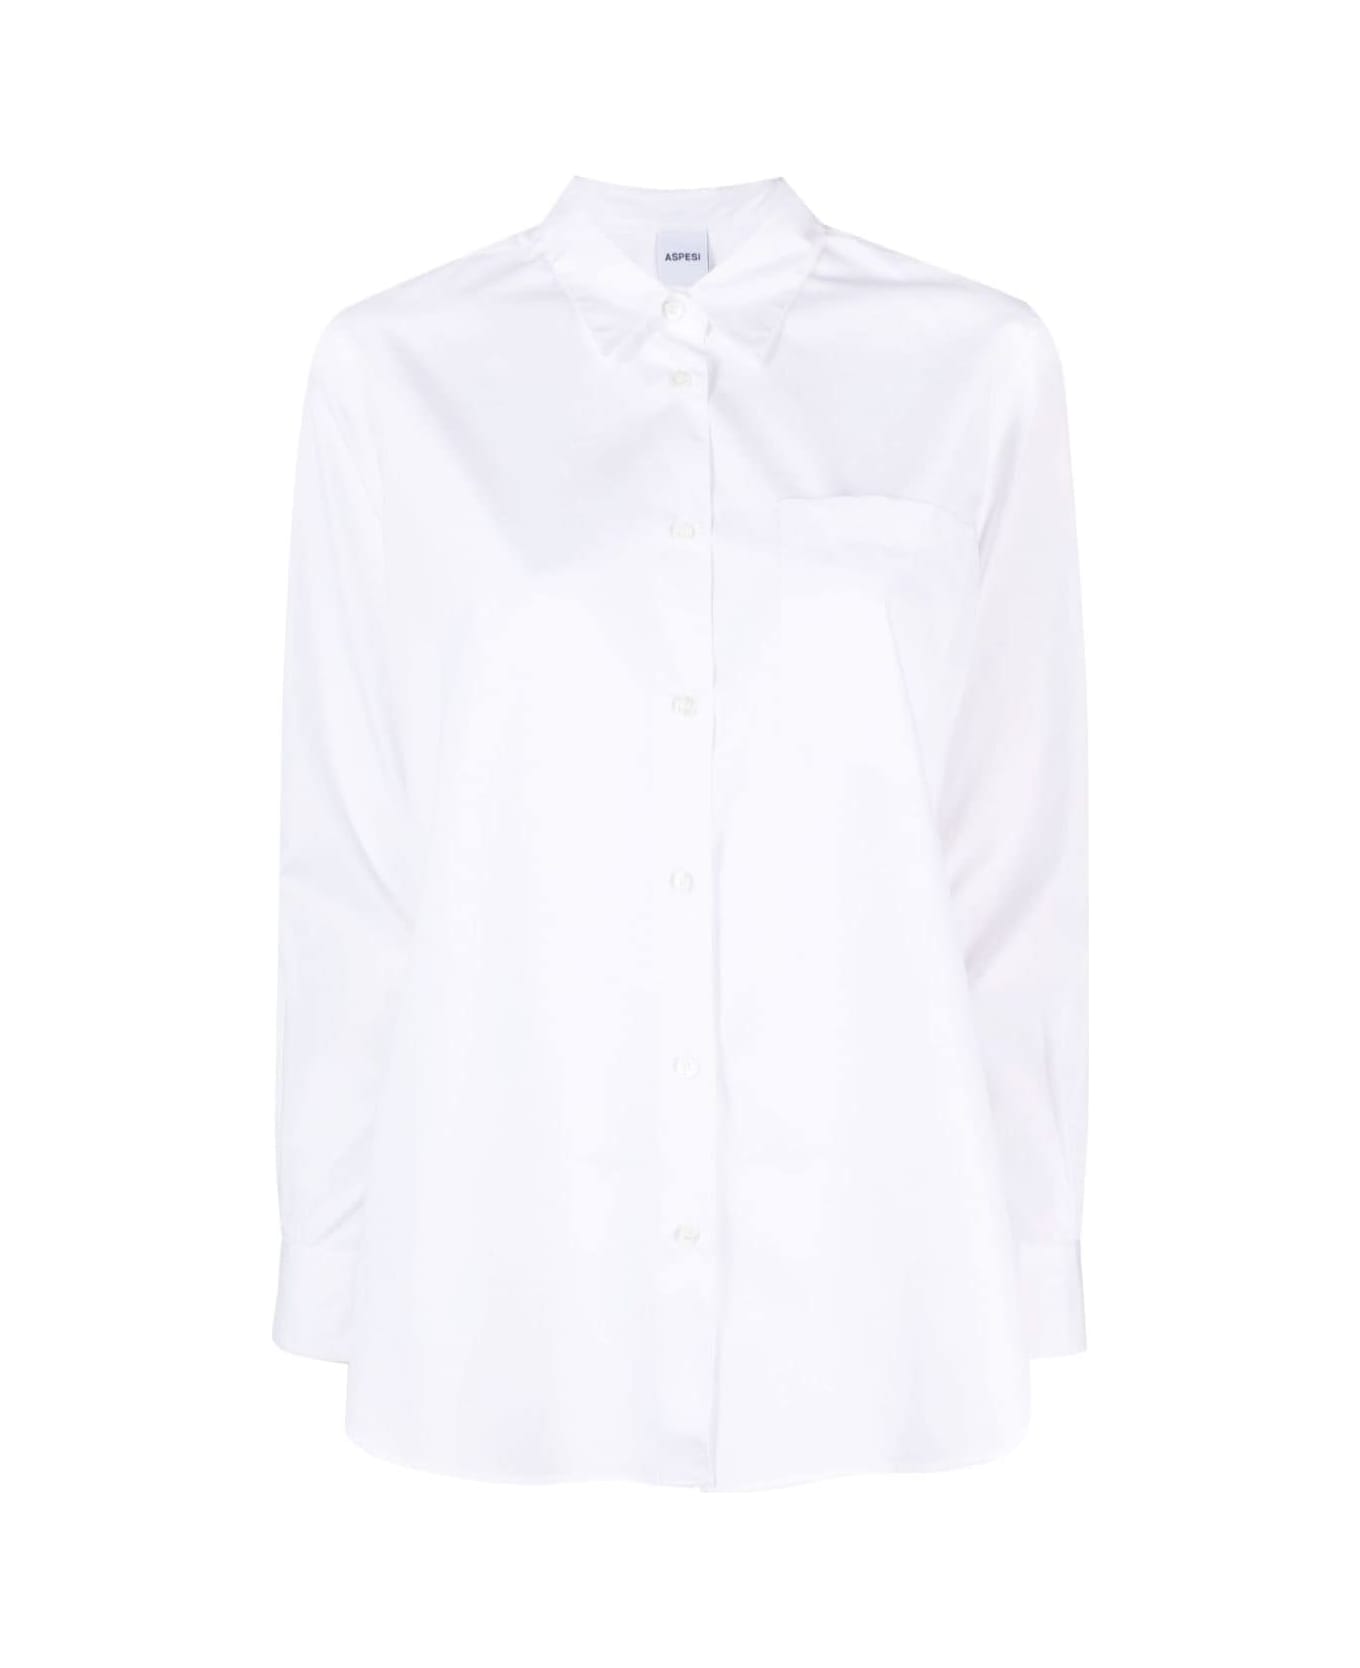 Aspesi 5460 Oversize Shirt With Pocket - White